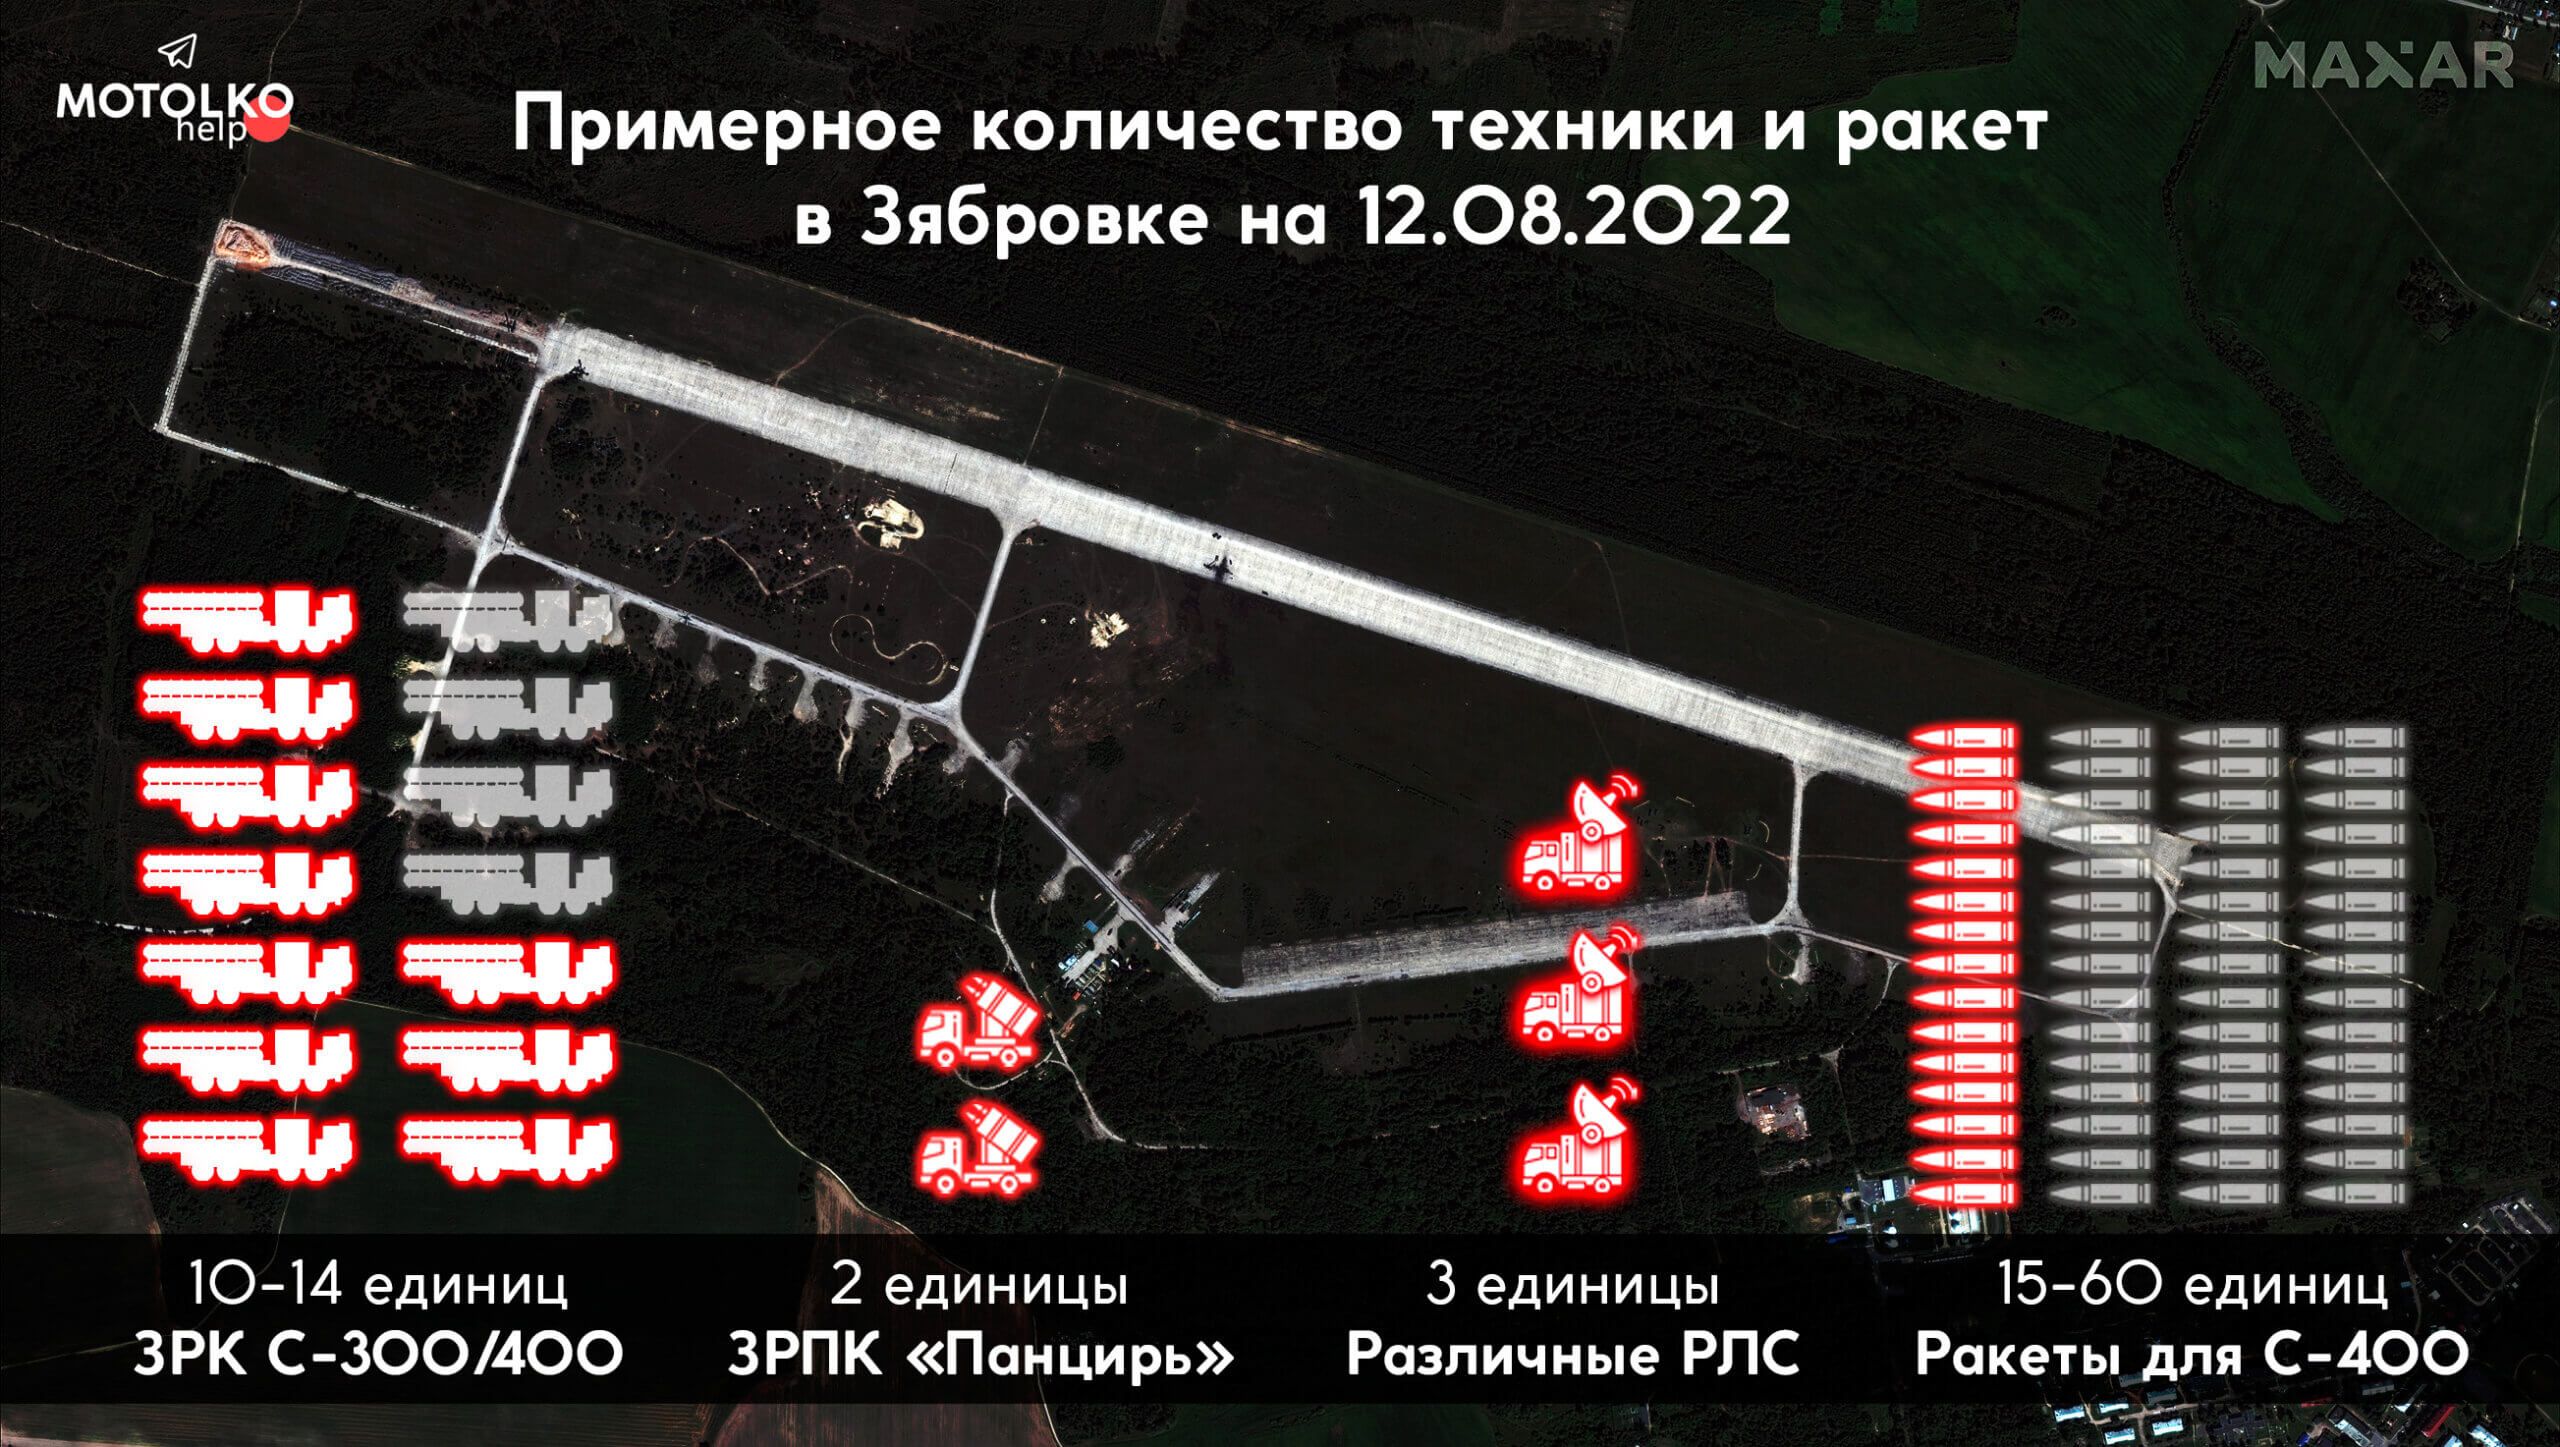 На знімках видно щонайменше 15 стопок, тобто мінімум 15-60 ракет для ЗРК С-300/400.